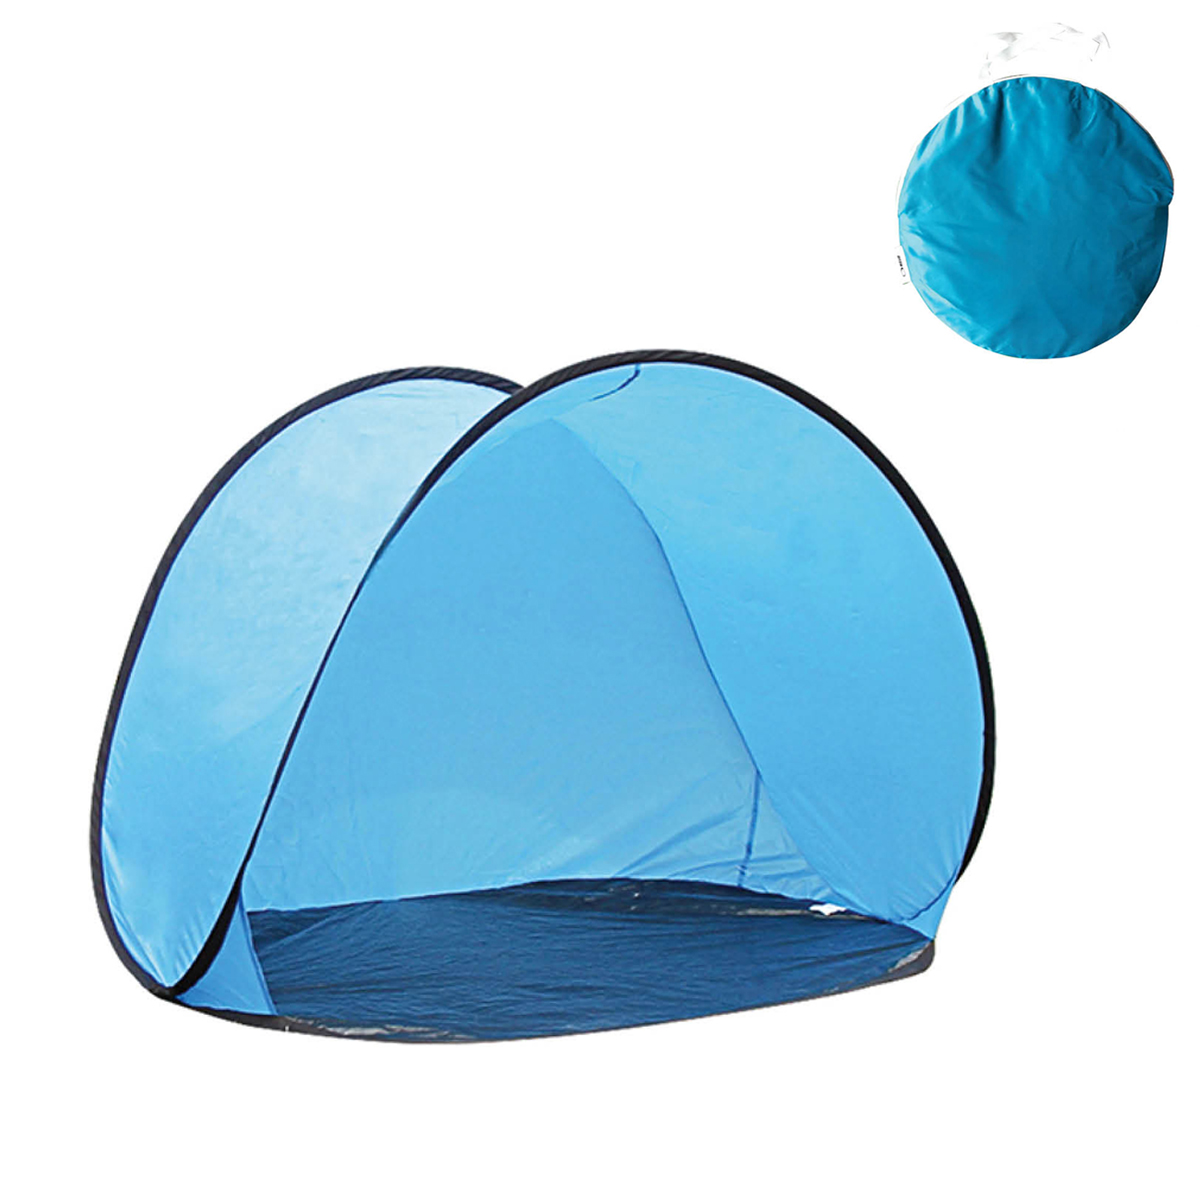 אוהל זוג קפיצי - בד האוהל עשוי מניילון. הגנה נגד קרינה UPF 50+. 
מידות האוהל: 200x150x110 ס